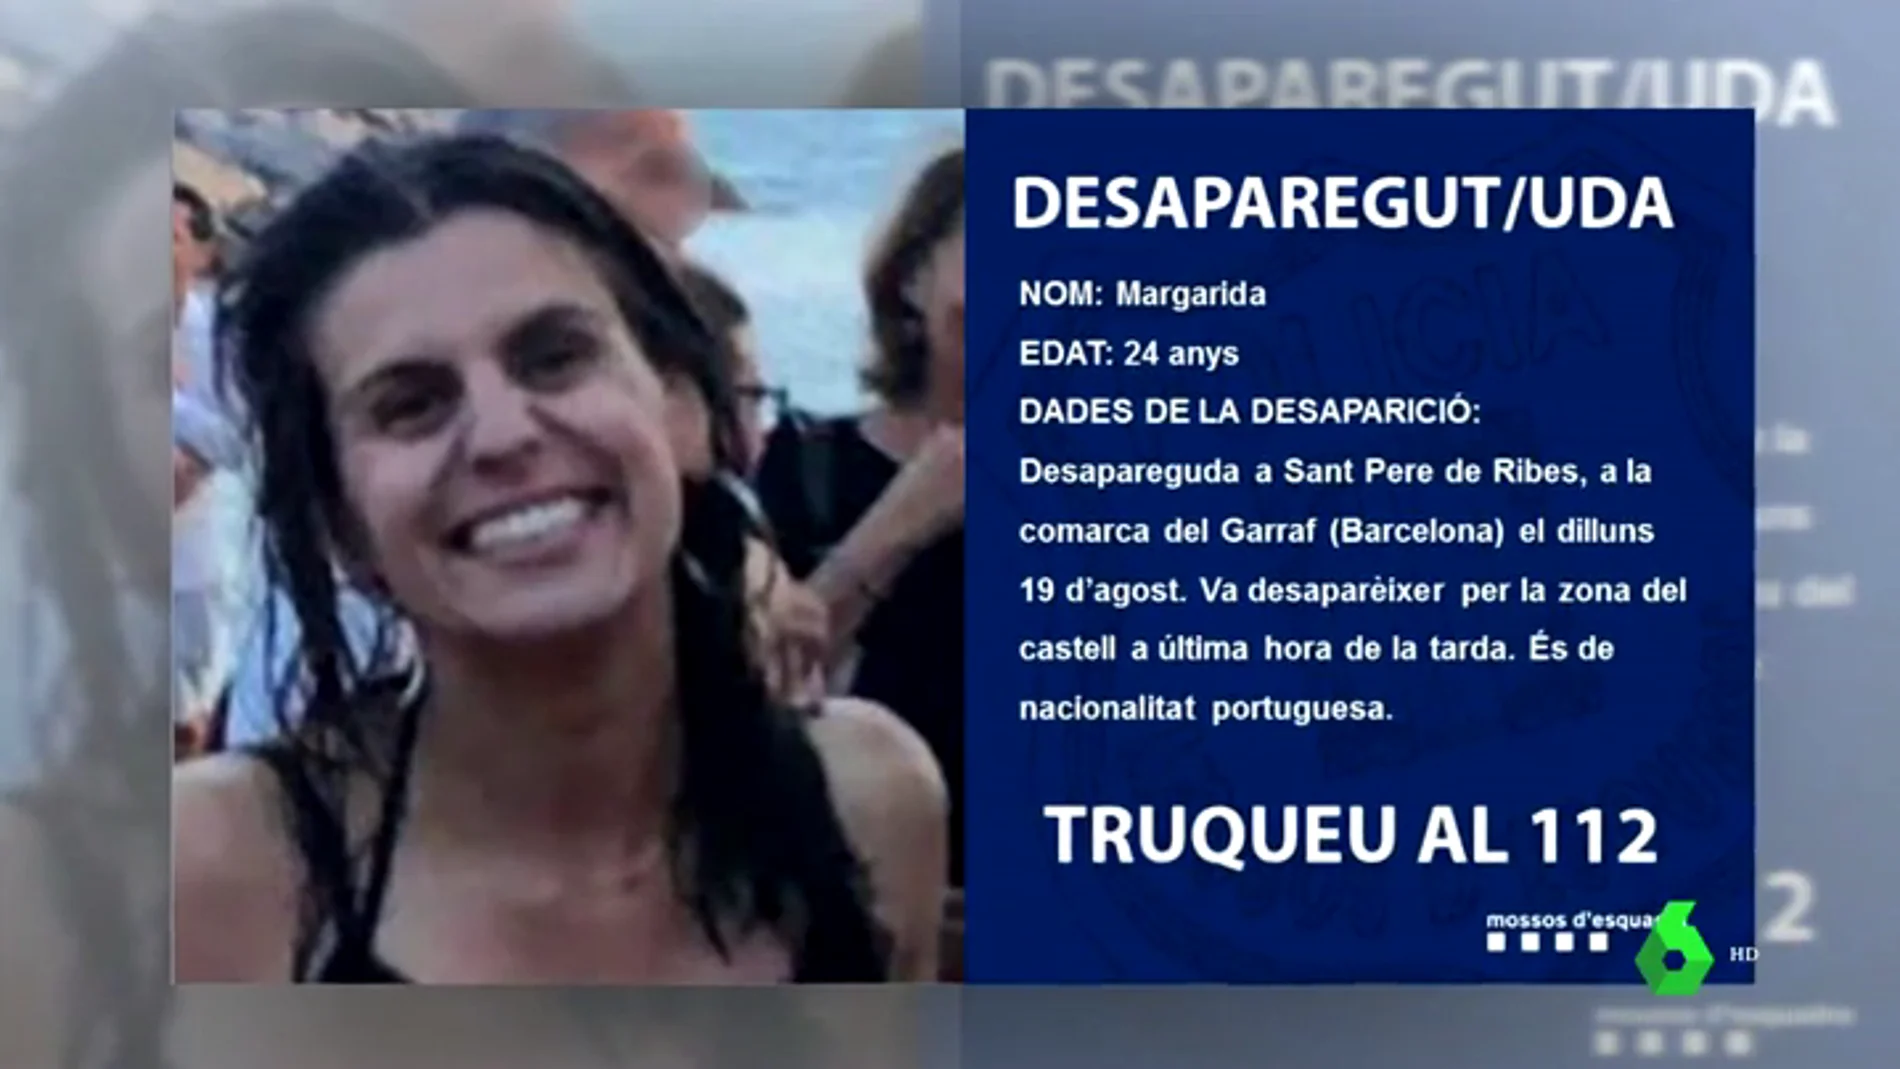 Desaparecida una joven en Sant Pere de Ribes, Barcelona